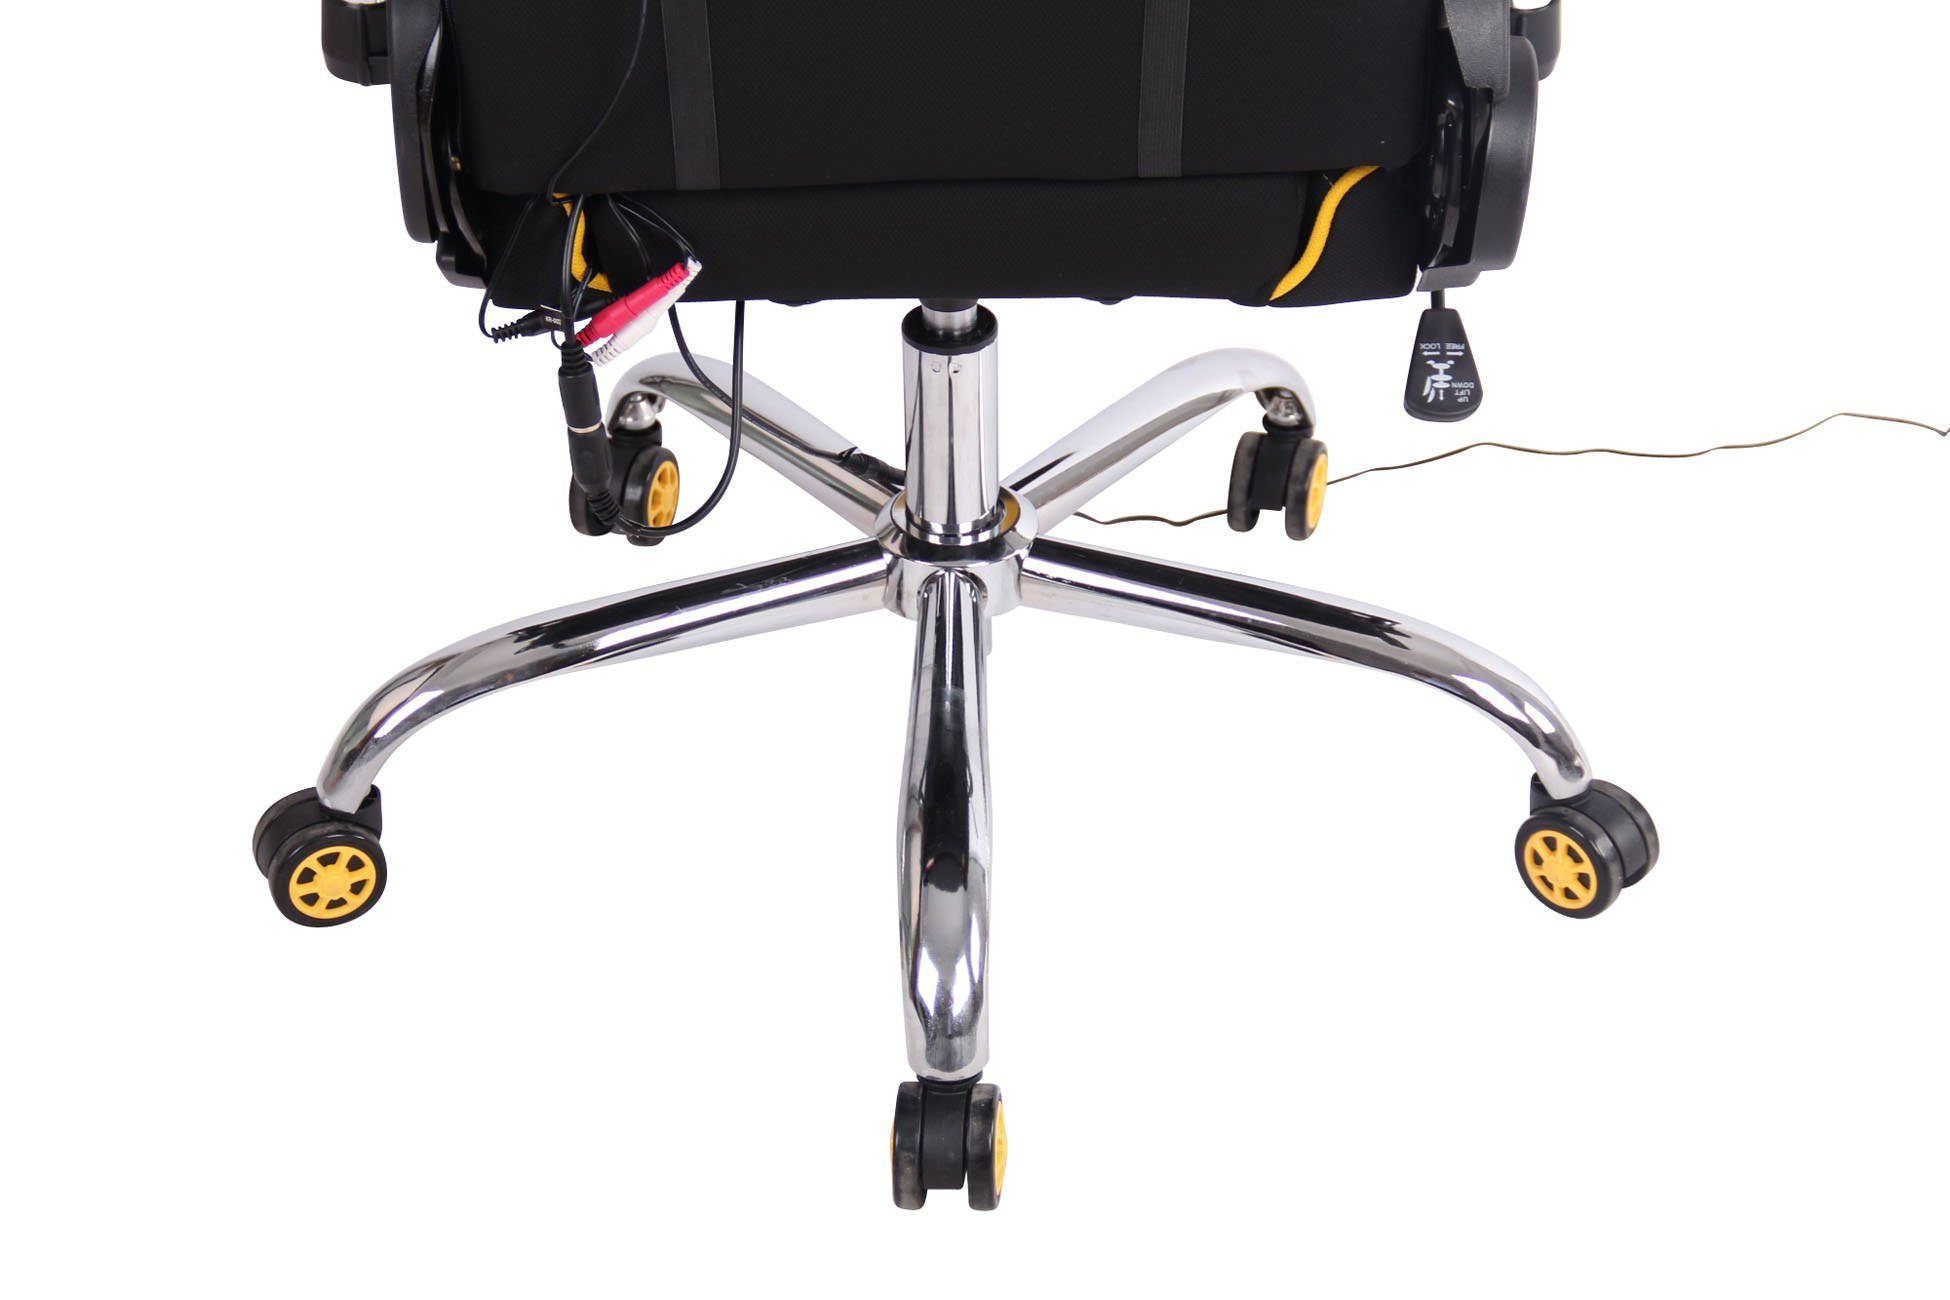 Gaming schwarz/gelb Massagefunktion Limit CLP Chair Stoff, mit XM